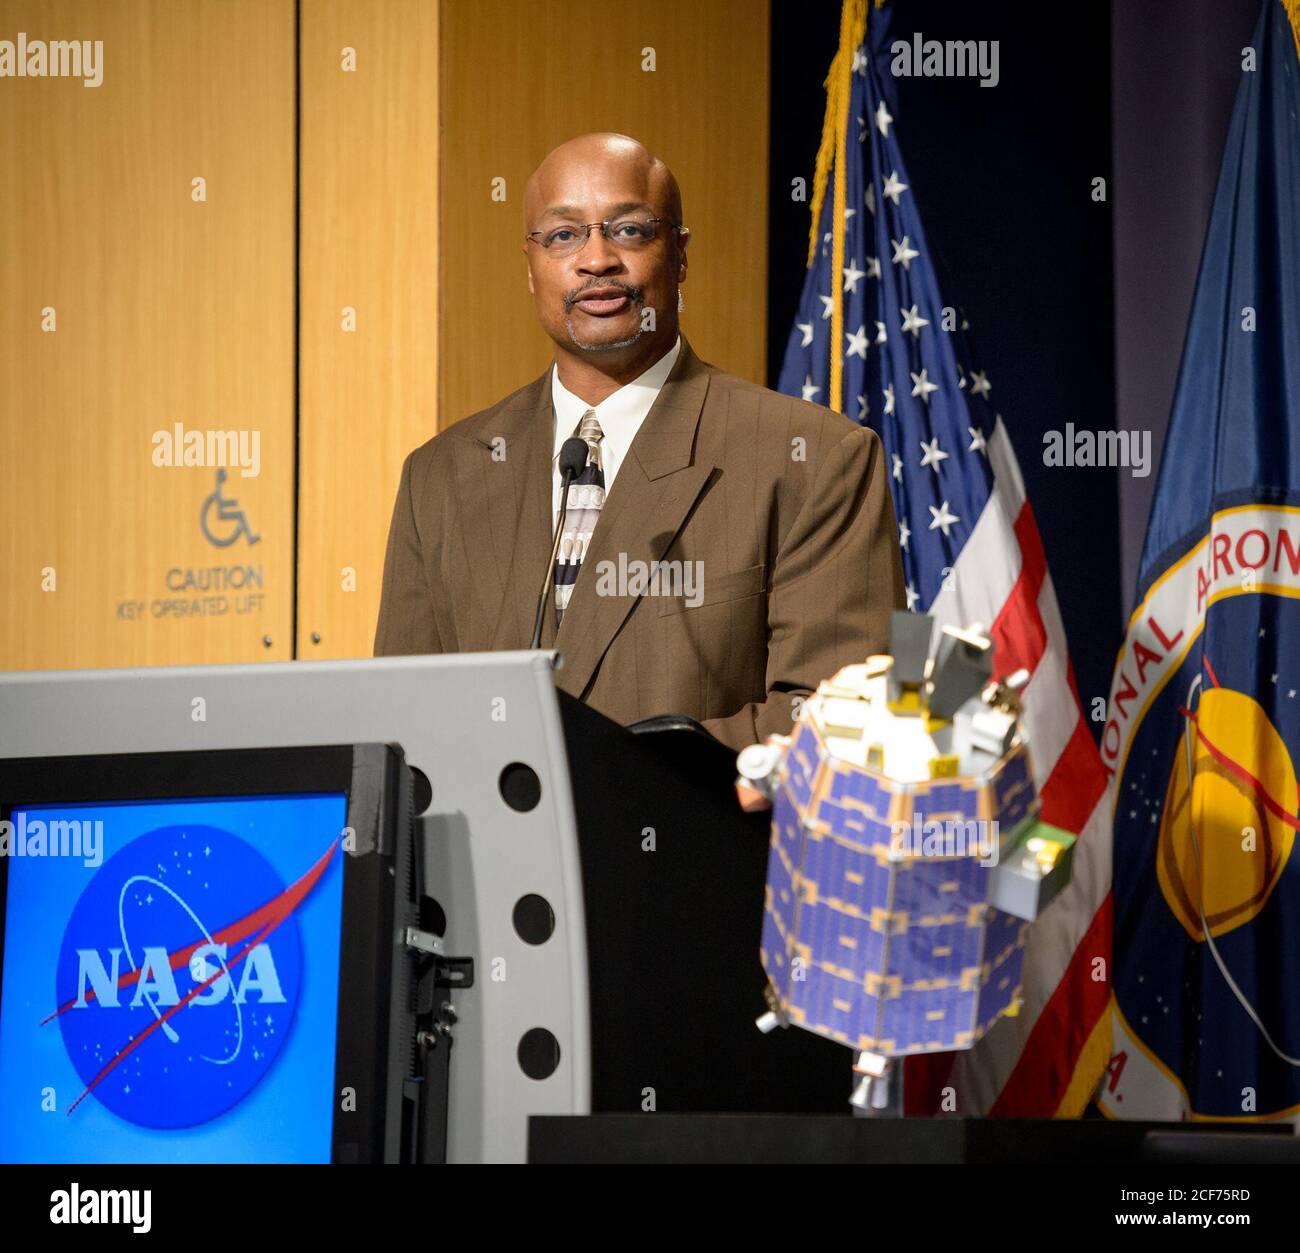 Dwayne Brown, Oficial de Asuntos públicos de la Sede de la NASA, moderará la presentación de una misión del explorador de la atmósfera y el polvo lunares (LADEE) en la sede de la NASA, el jueves 22 de agosto de 2013 en Washington. Los datos de la misión LADEE de la NASA proporcionarán información sin precedentes sobre el medio ambiente alrededor de la luna y darán a los científicos una mejor comprensión de otros cuerpos planetarios en nuestro sistema solar y más allá. La misión LADEE está programada para lanzar a las 11:27 p.m. el viernes 6 de septiembre, desde las instalaciones de vuelo Wallops de la NASA en Wallops Island, Virginia. Crédito fotográfico: (NASA/Bill Ingalls) Foto de stock